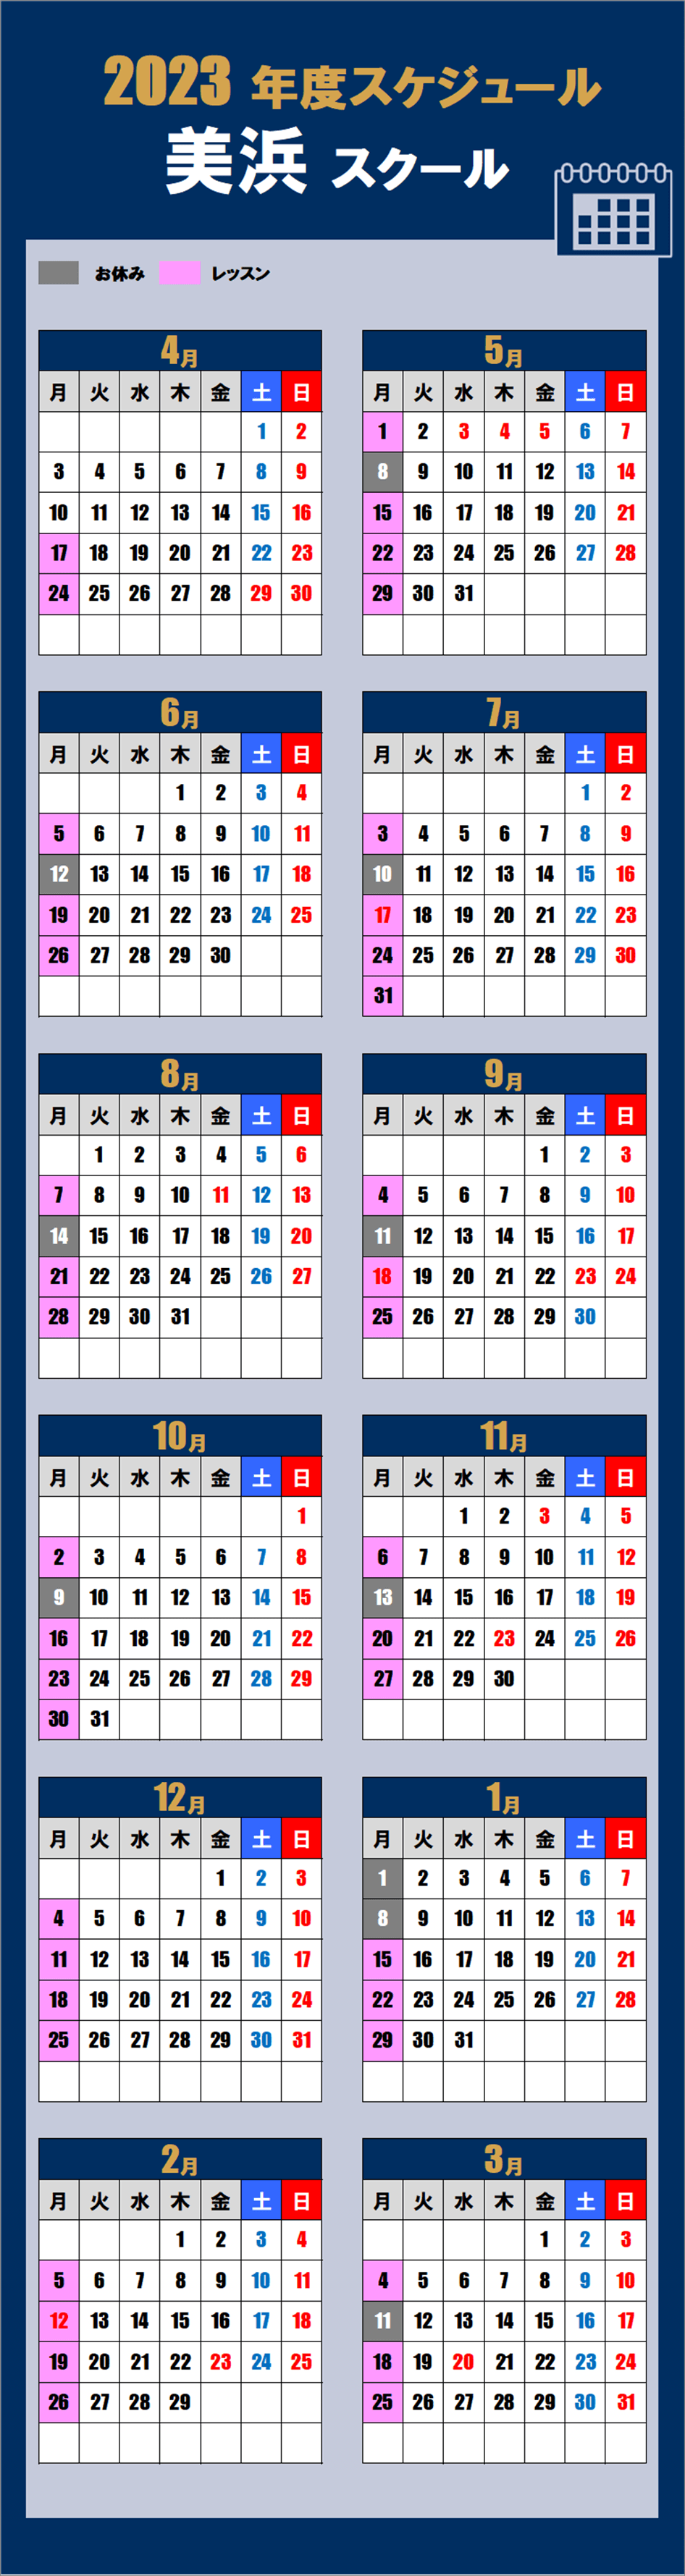 千葉美浜区スクールカレンダー